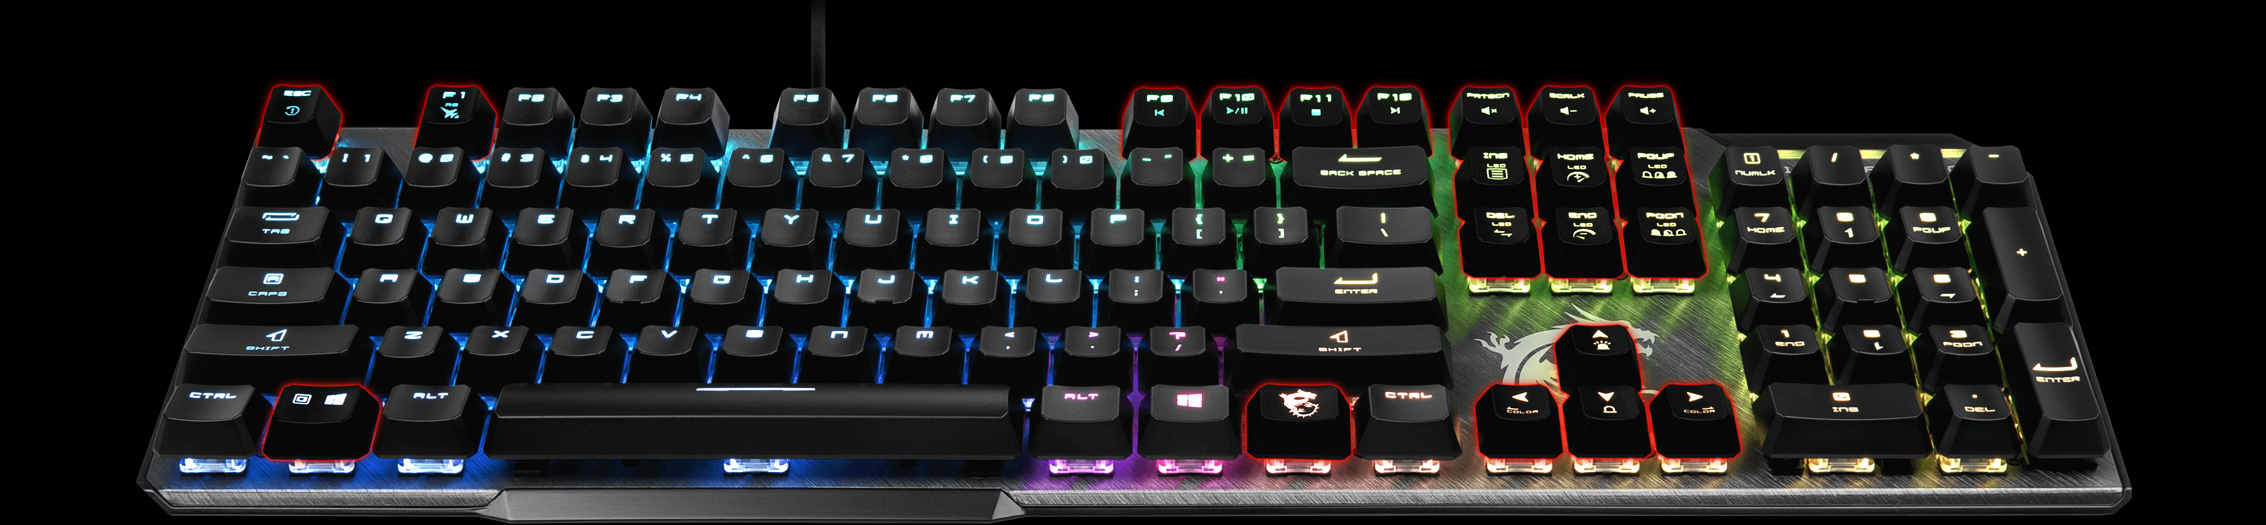 MSI Gaming Keyboard